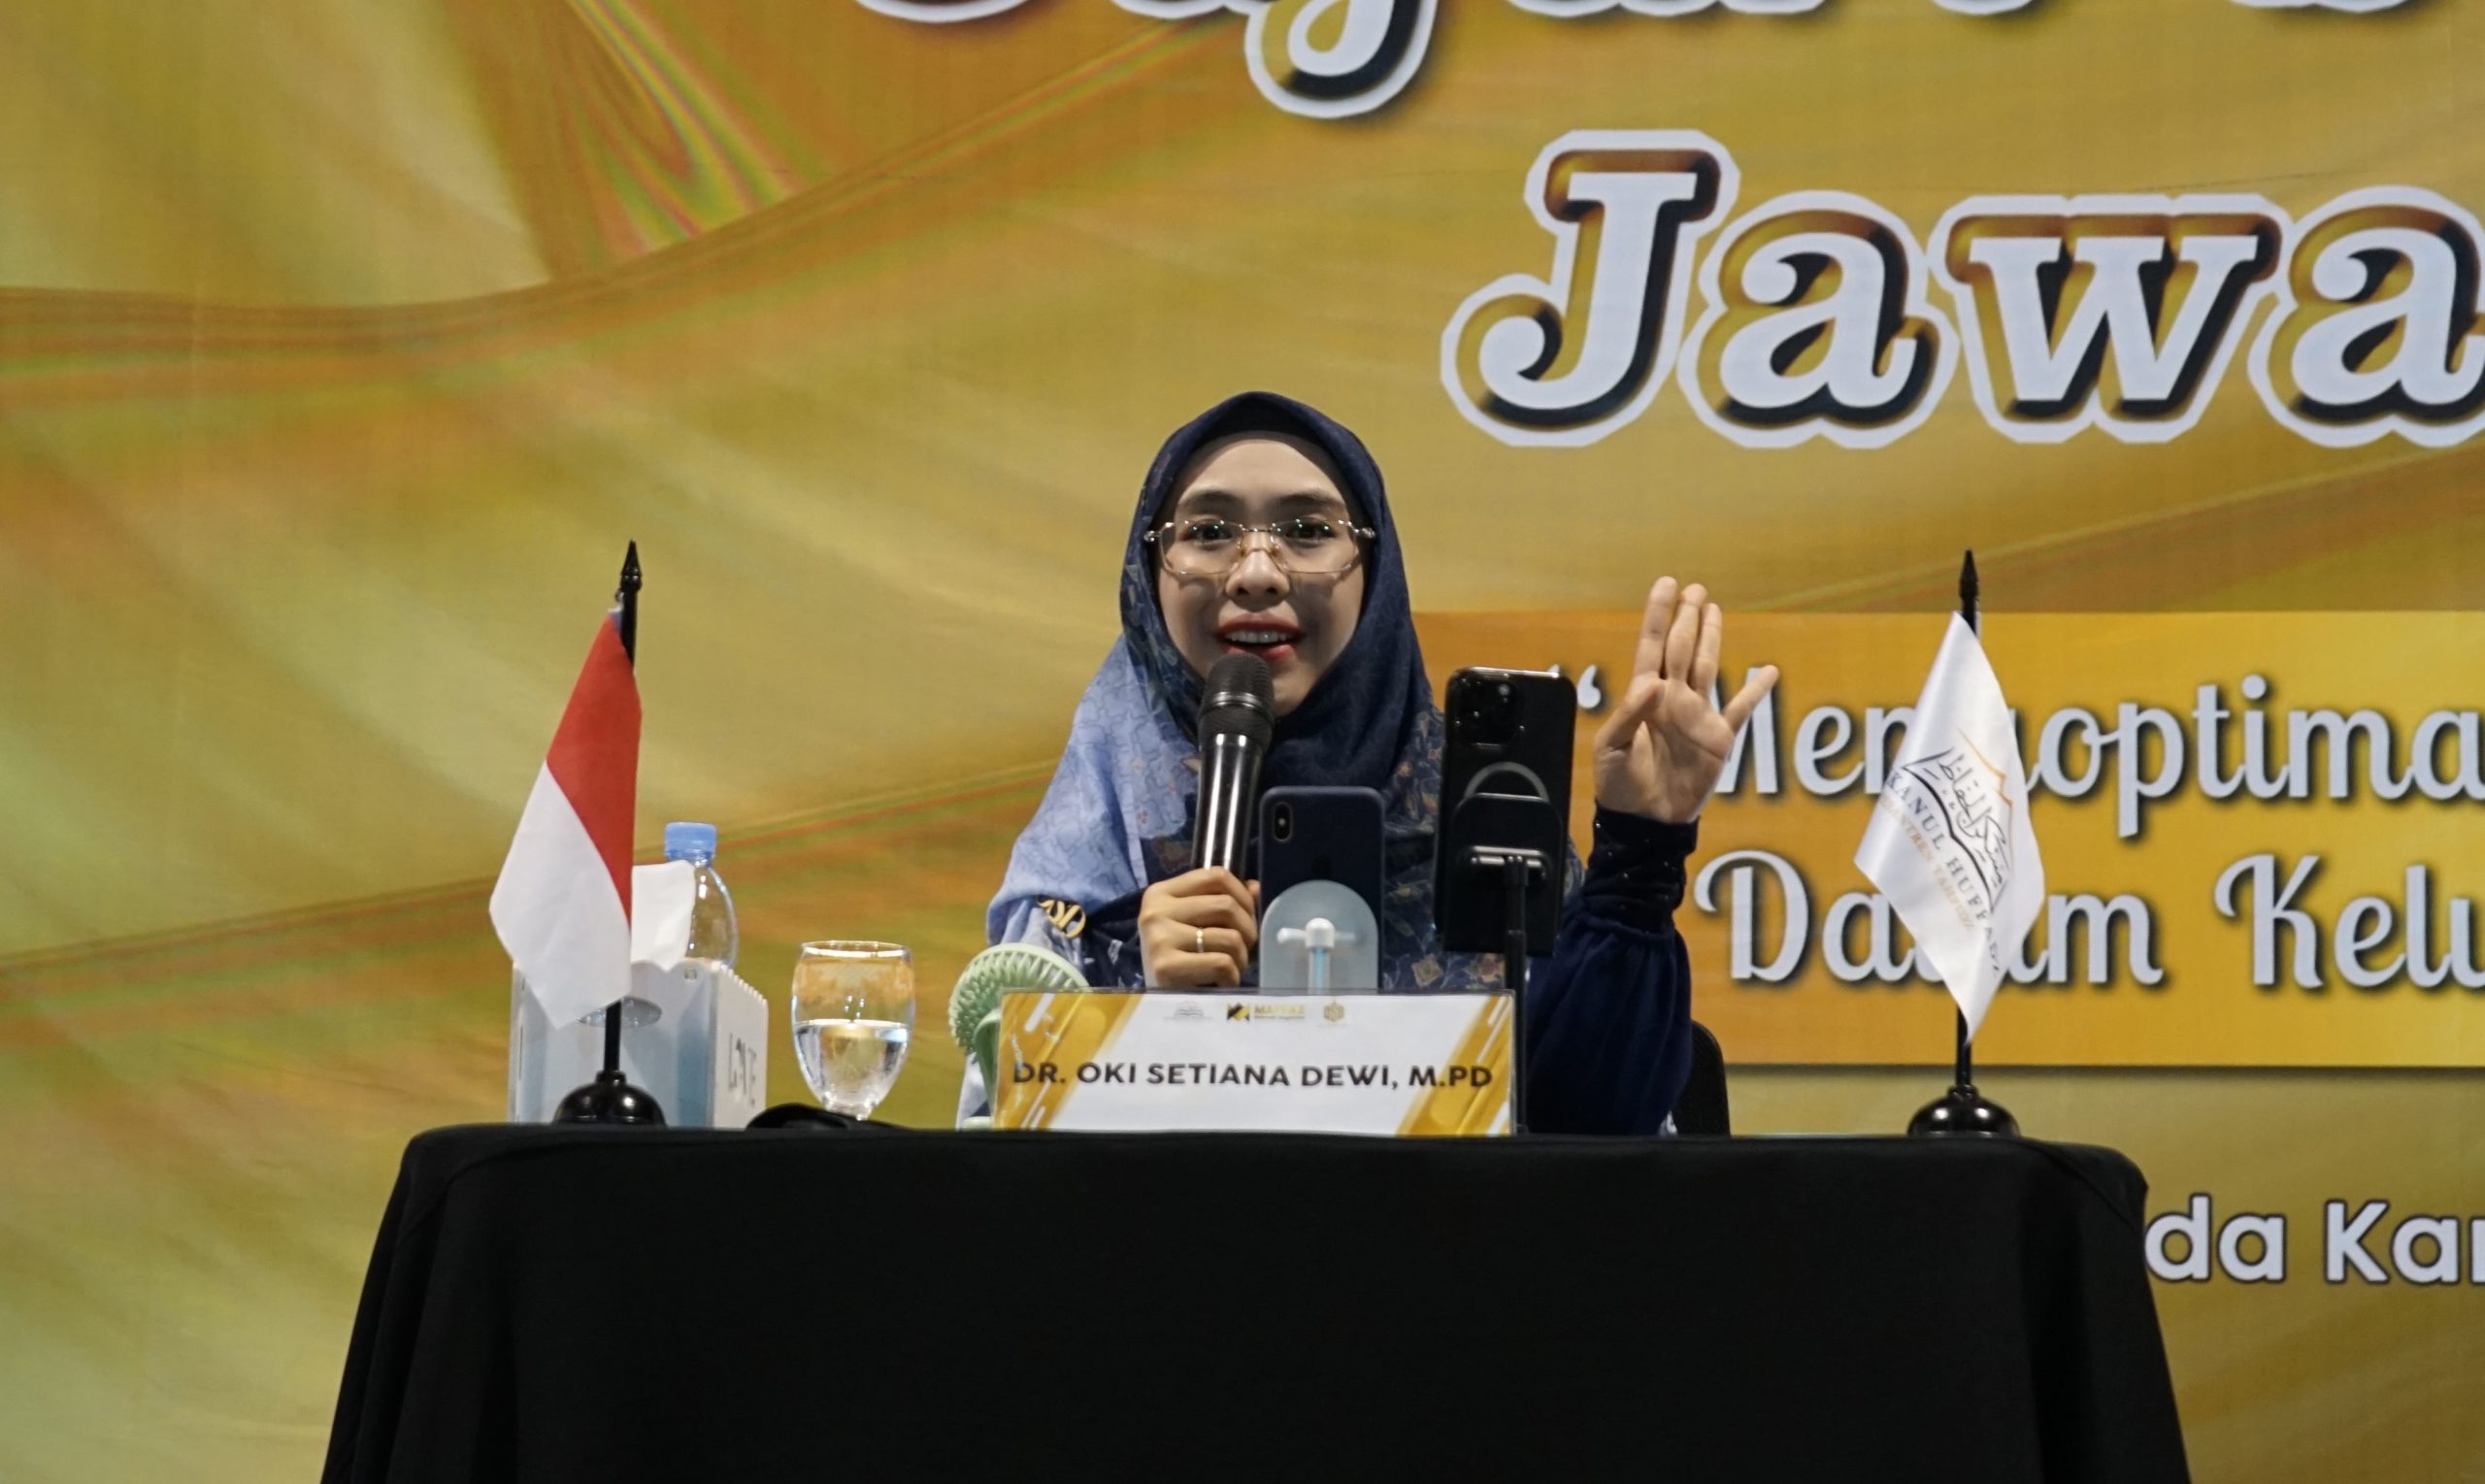 Safari Dakwah Umma Oki Setiana Dewi di Banjar, Acara Meriah dengan UMKM Kreatif